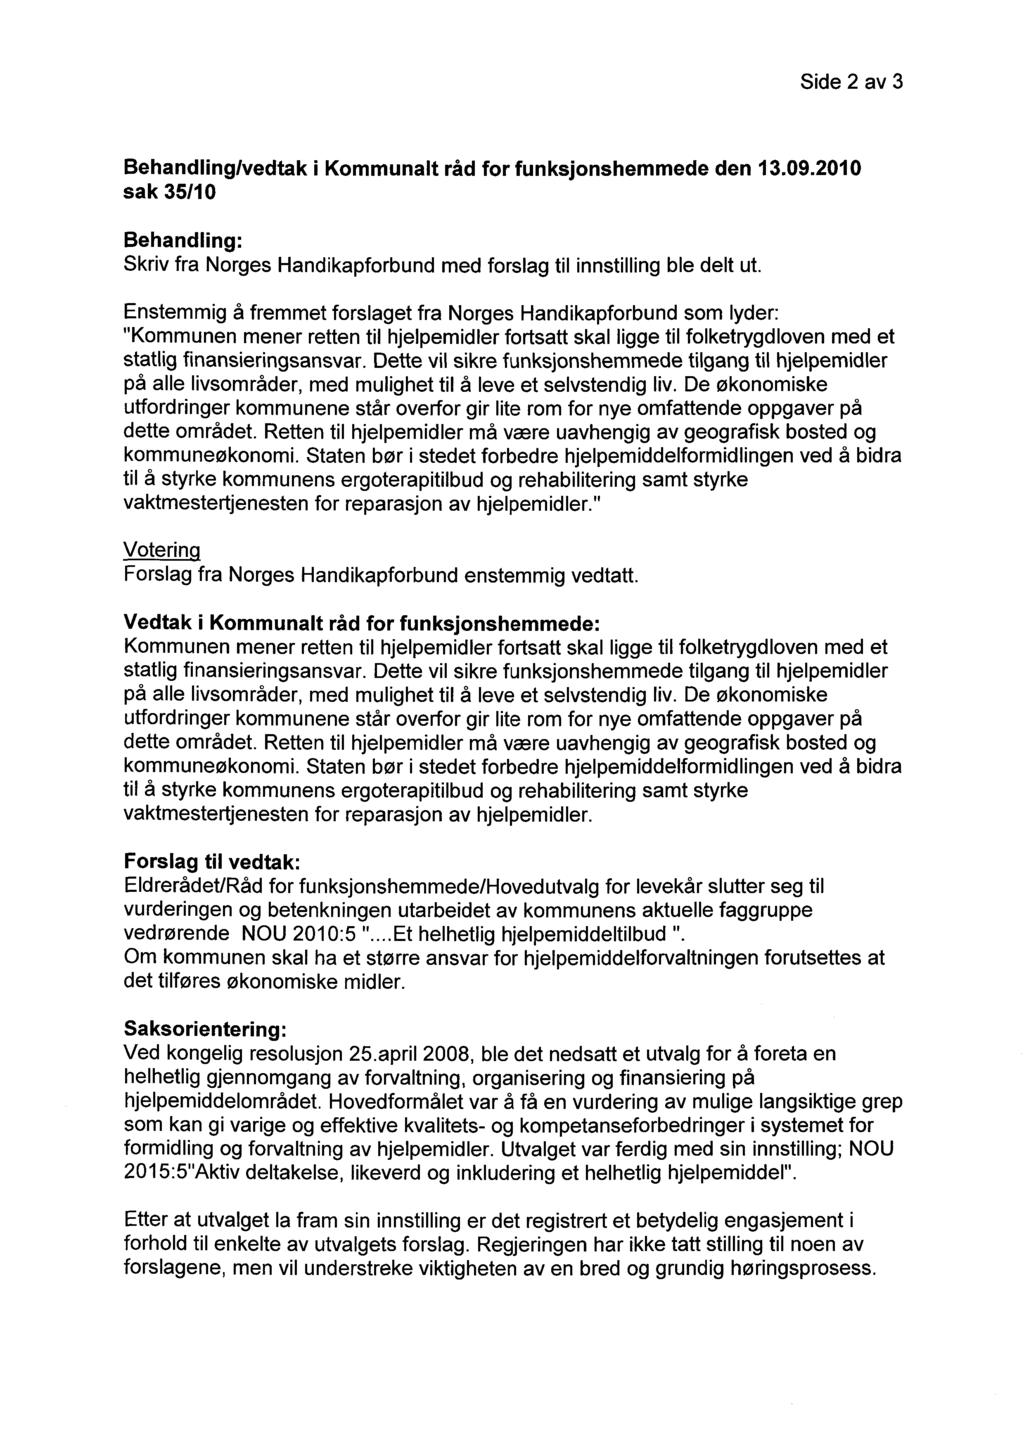 Side 2 av 3 Behandling/vedtak i Kommunalt råd for funksjonshemmede den 13.09.2010 sak 35/10 Behandling: Skriv fra Norges Handikapforbund med forslag til innstilling ble delt ut.